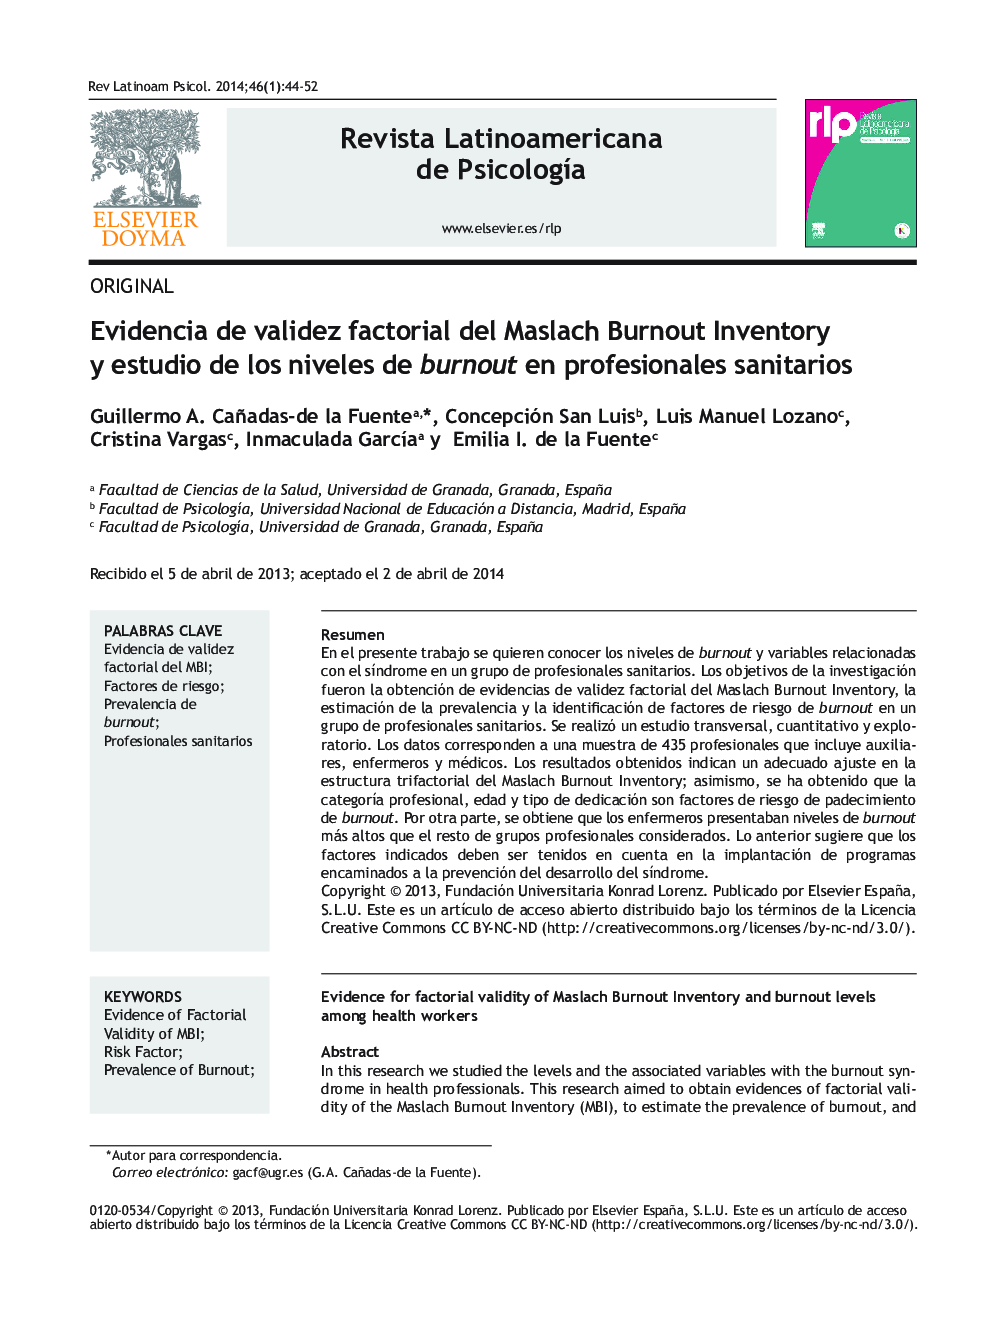 Evidencia de validez factorial del Maslach Burnout Inventory y estudio de los niveles de burnout en profesionales sanitarios